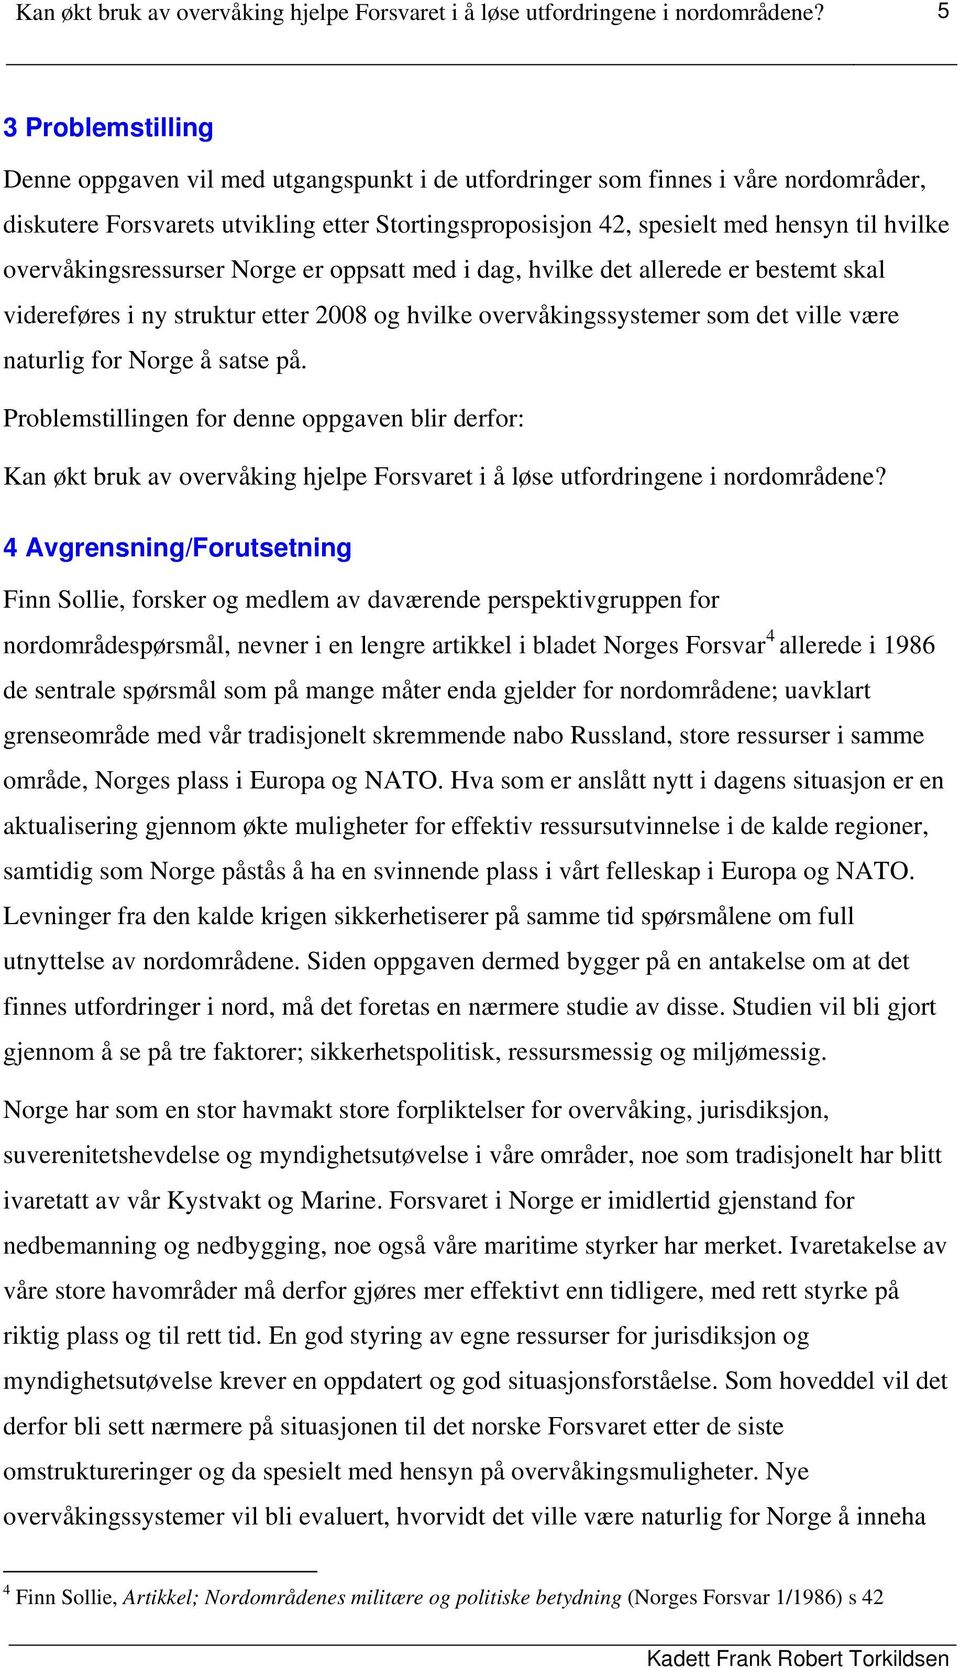 overvåkingsressurser Norge er oppsatt med i dag, hvilke det allerede er bestemt skal videreføres i ny struktur etter 2008 og hvilke overvåkingssystemer som det ville være naturlig for Norge å satse